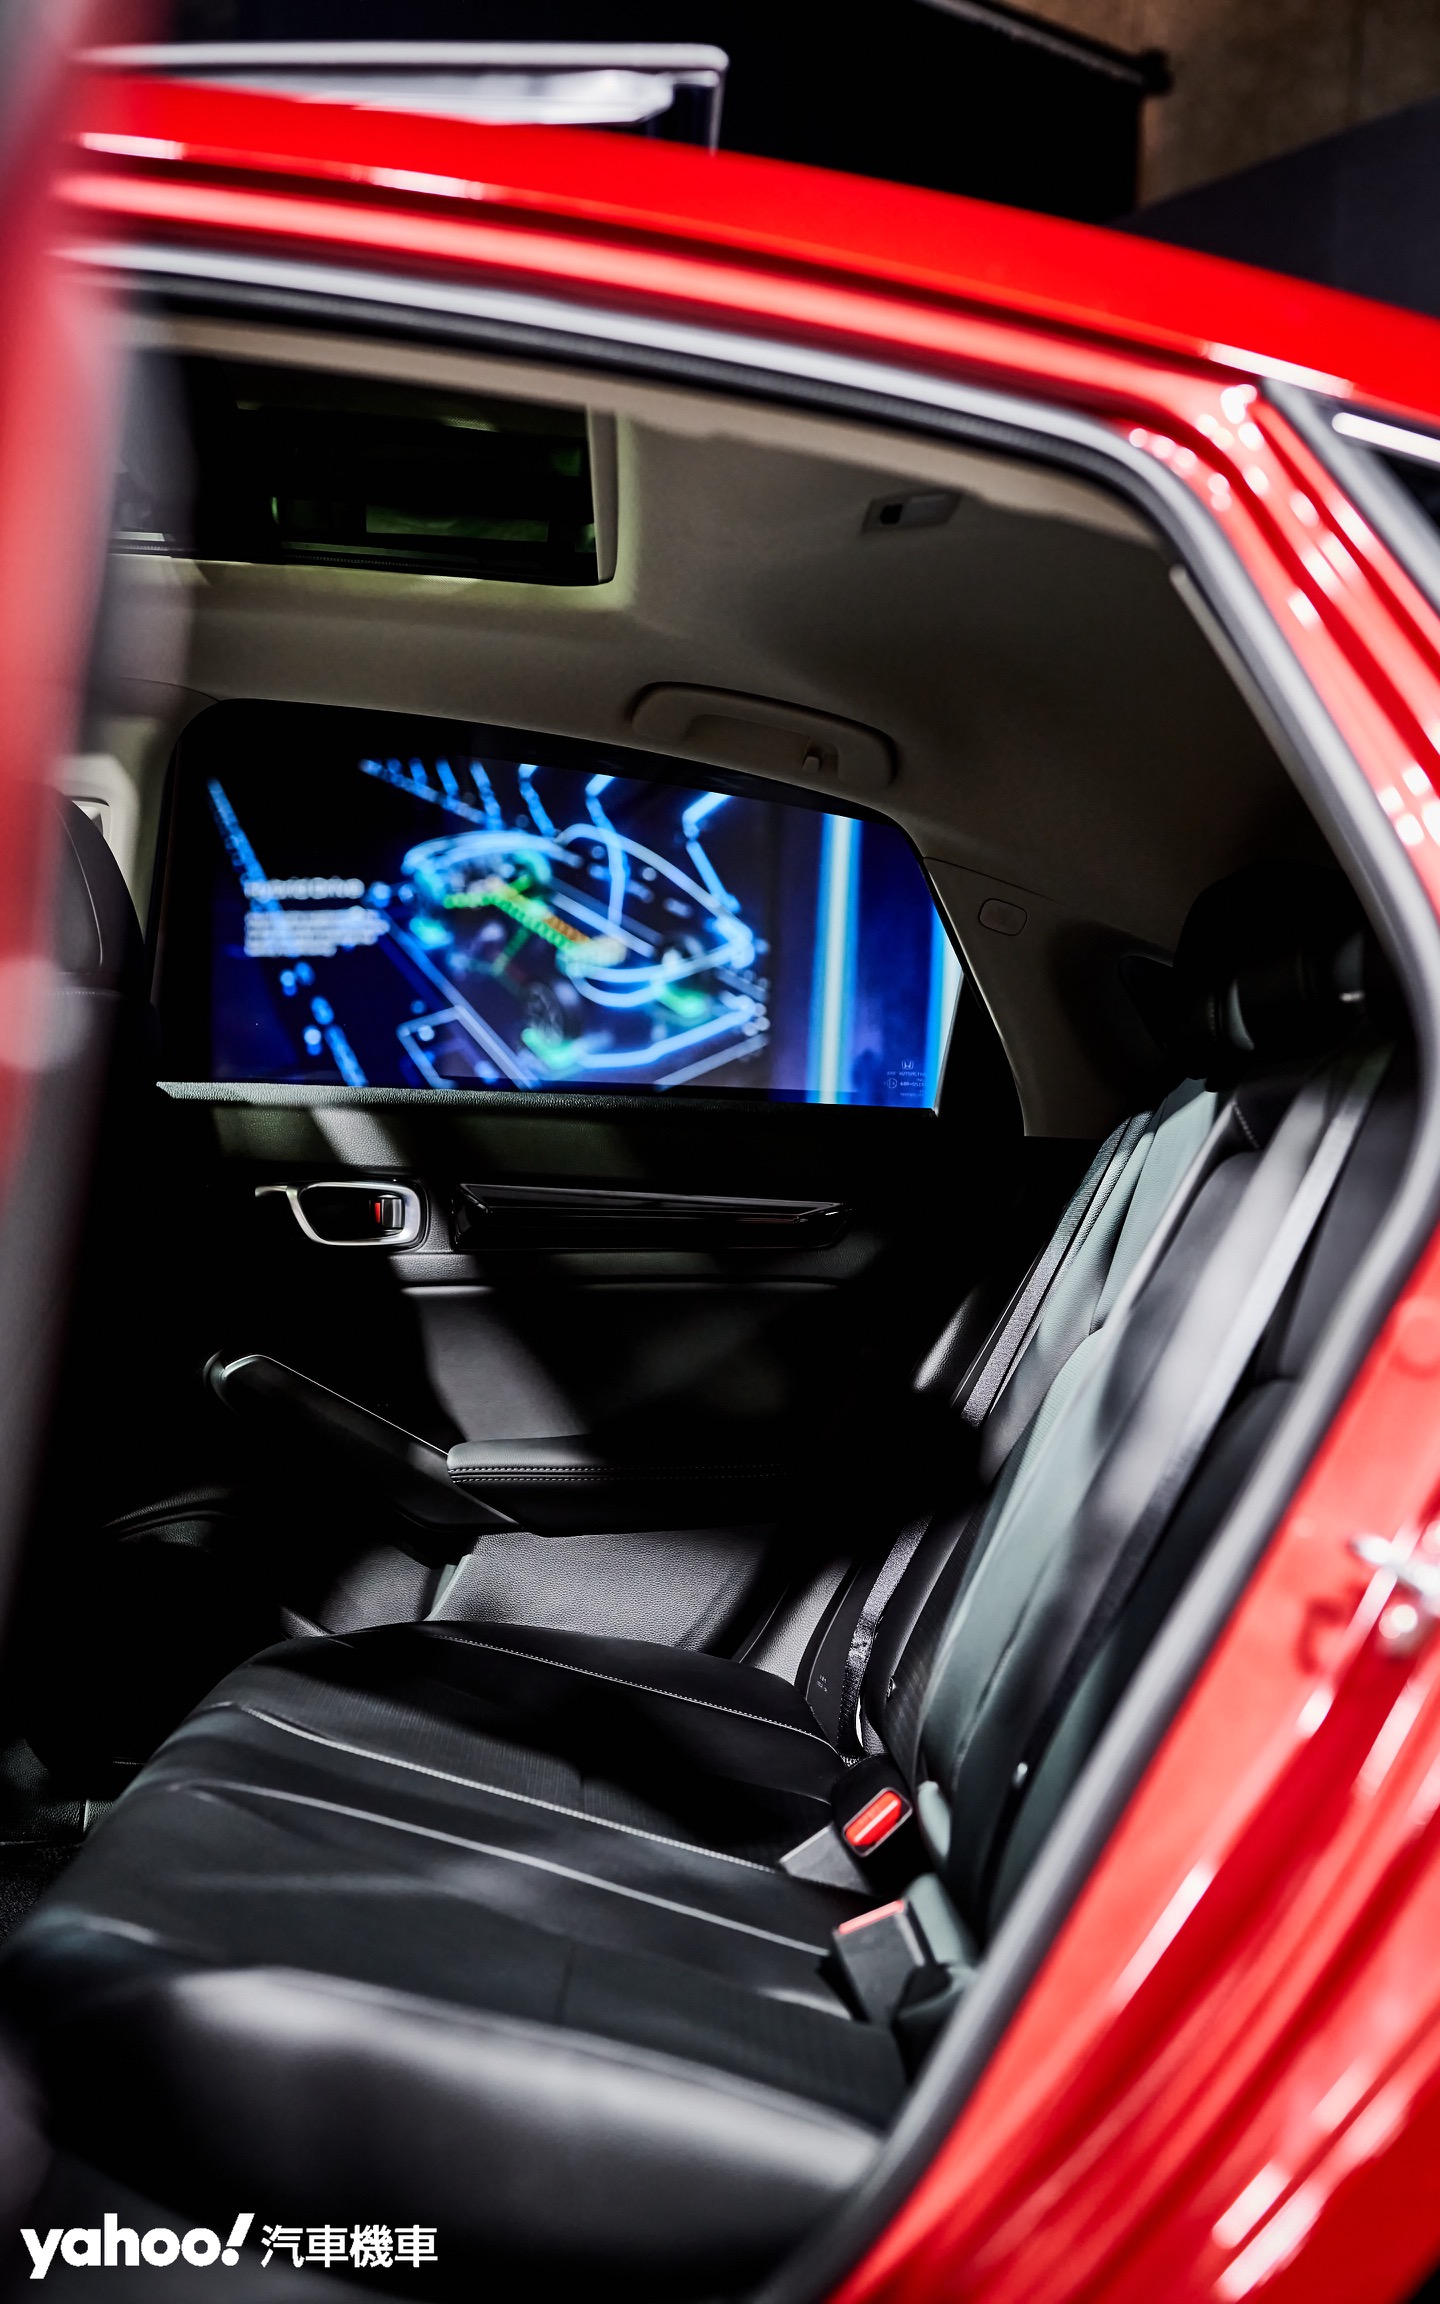 更寬闊的車身設定賦予11代Honda Civic舒適的乘坐空間與便利的置物性。